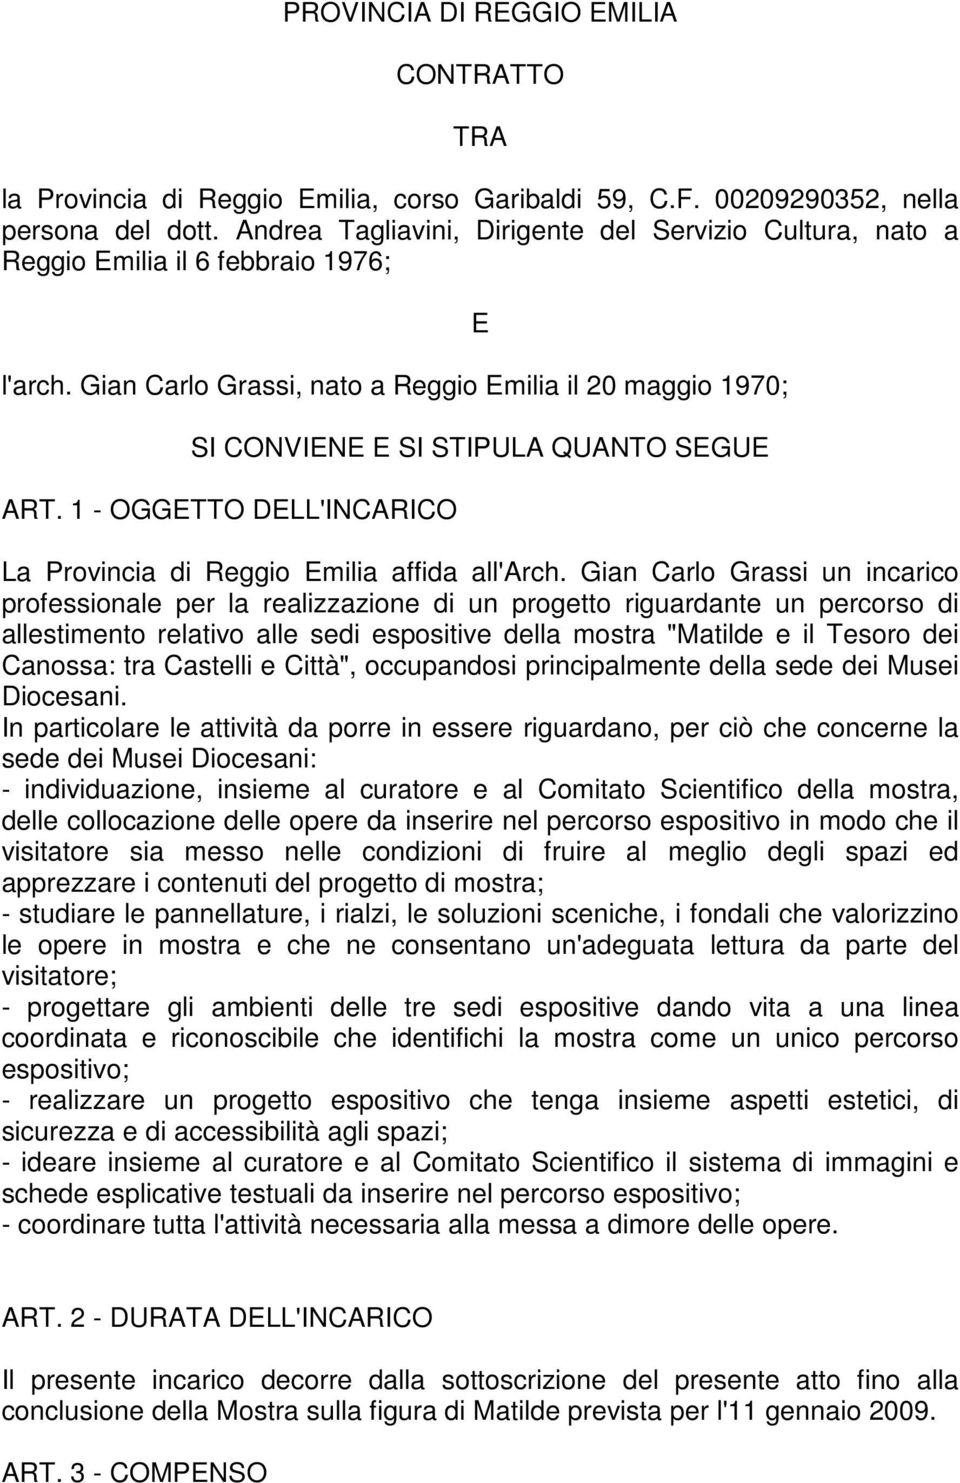 Gian Carlo Grassi, nato a Reggio Emilia il 20 maggio 1970; E SI CONVIENE E SI STIPULA QUANTO SEGUE ART. 1 - OGGETTO DELL'INCARICO La Provincia di Reggio Emilia affida all'arch.